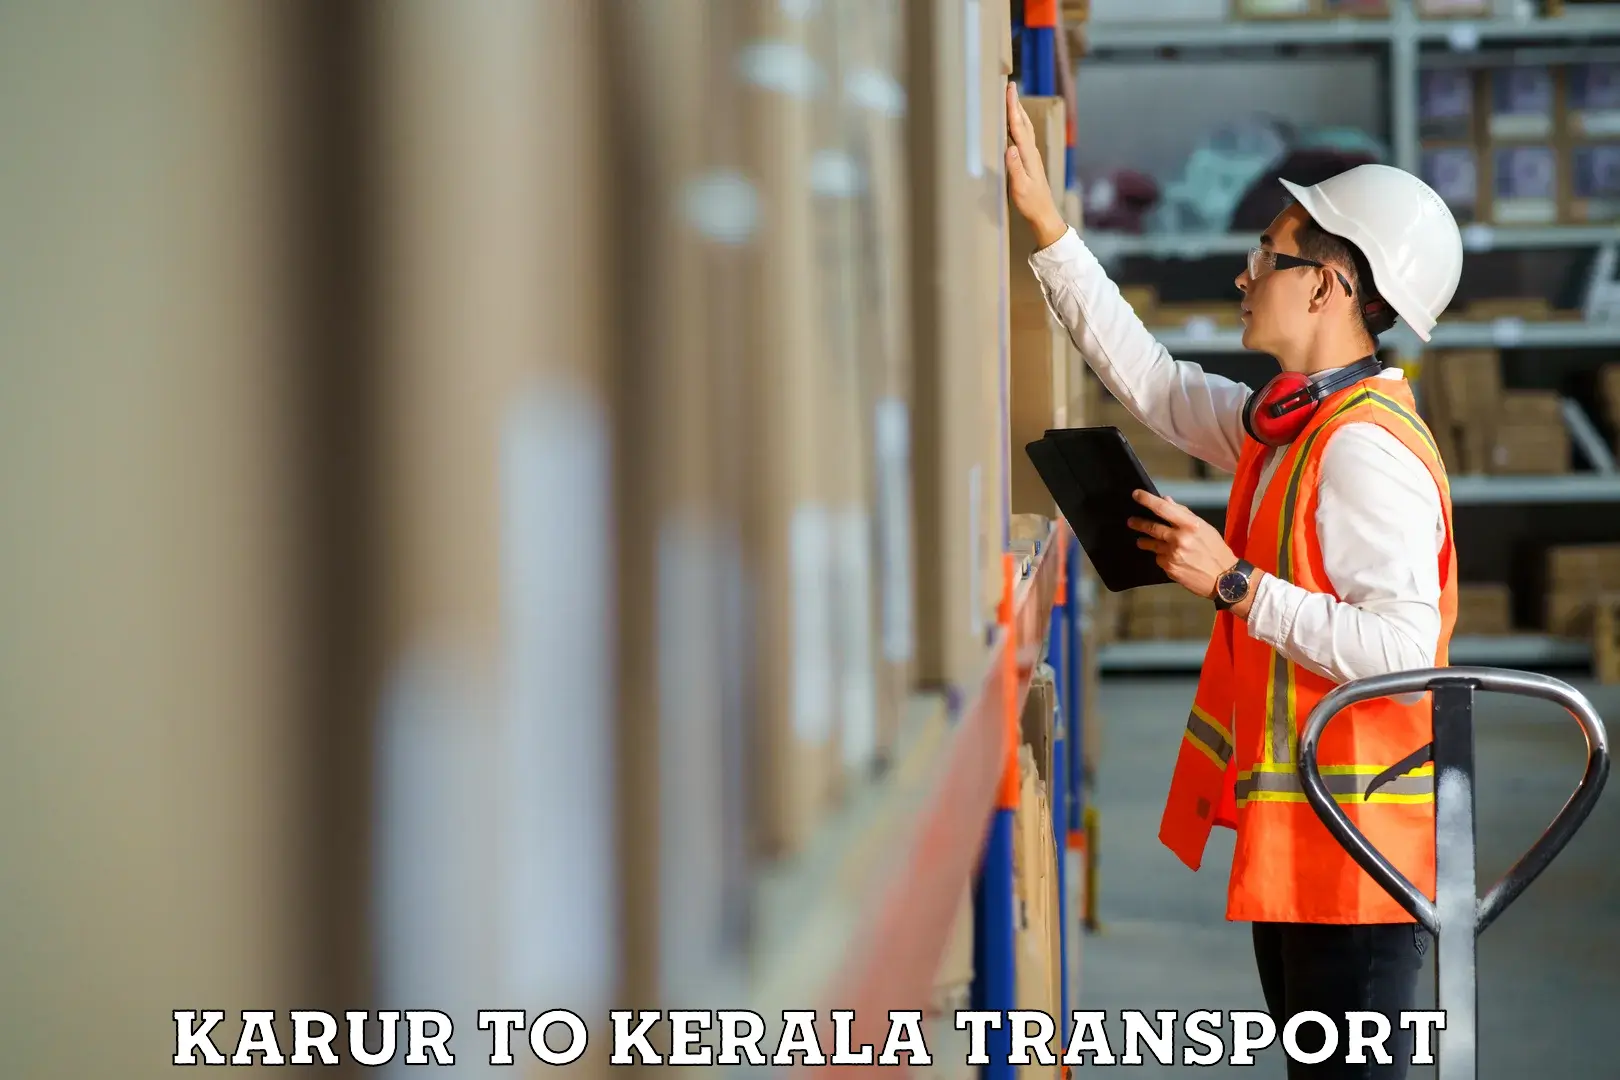 Commercial transport service Karur to Vaduvanchal